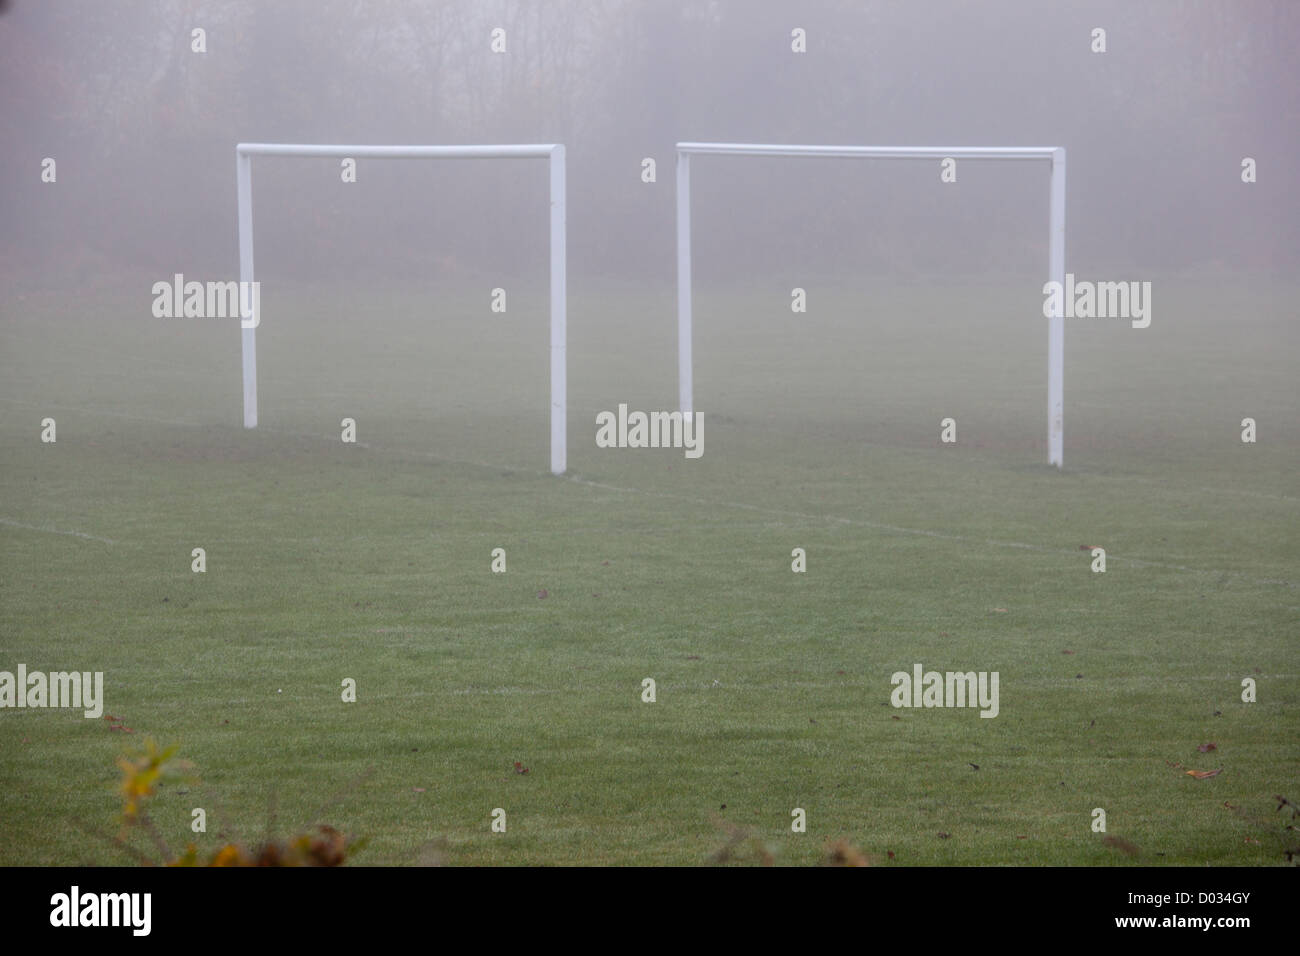 football goalposts in the mist Stock Photo